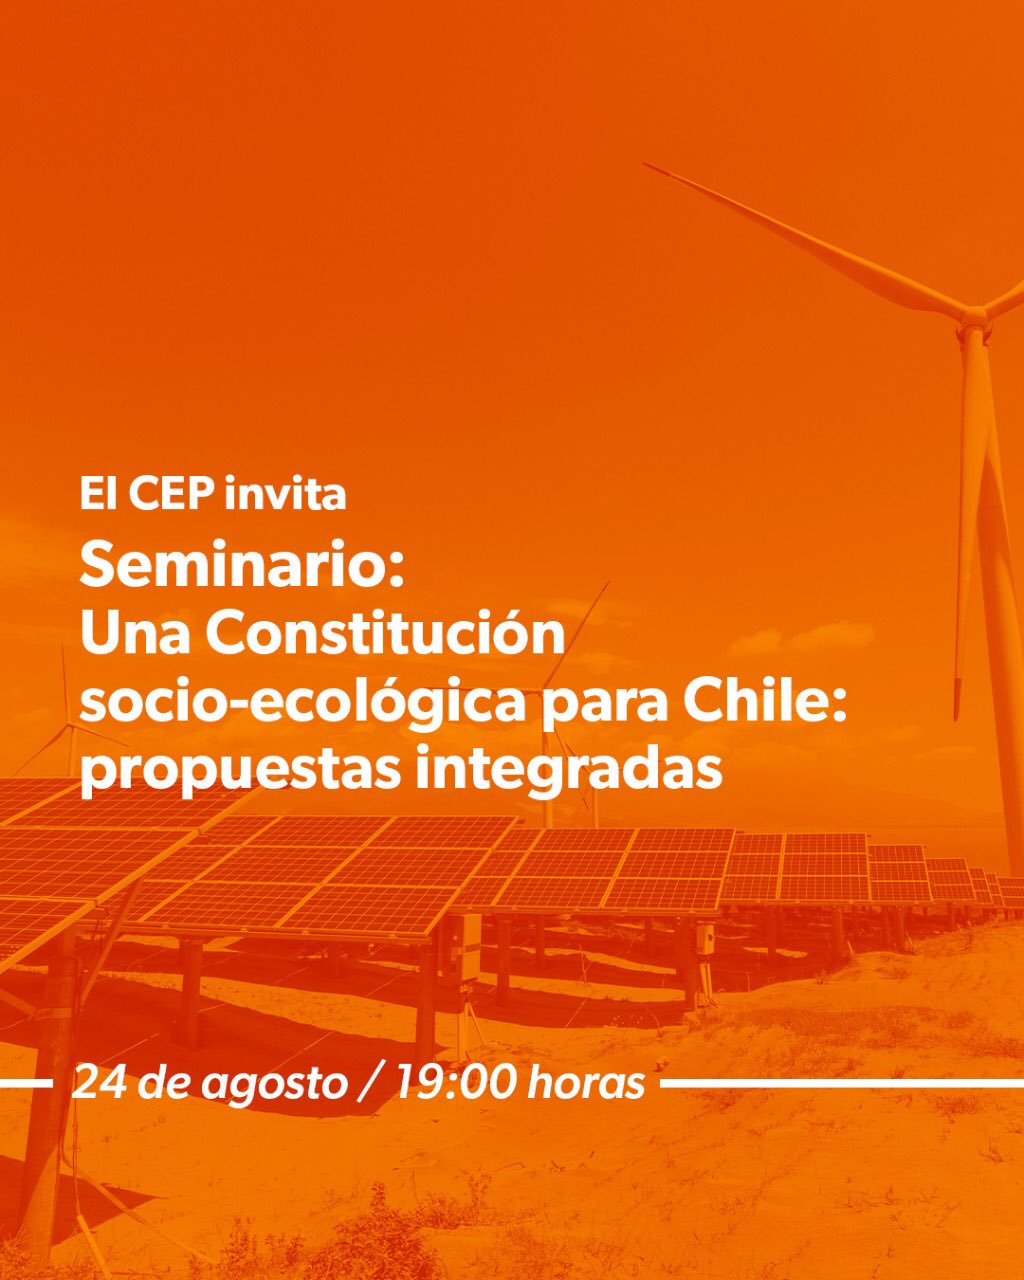 CEP organiza el seminario “Una Constitución socio-ecológica para Chile: propuestas integradas”